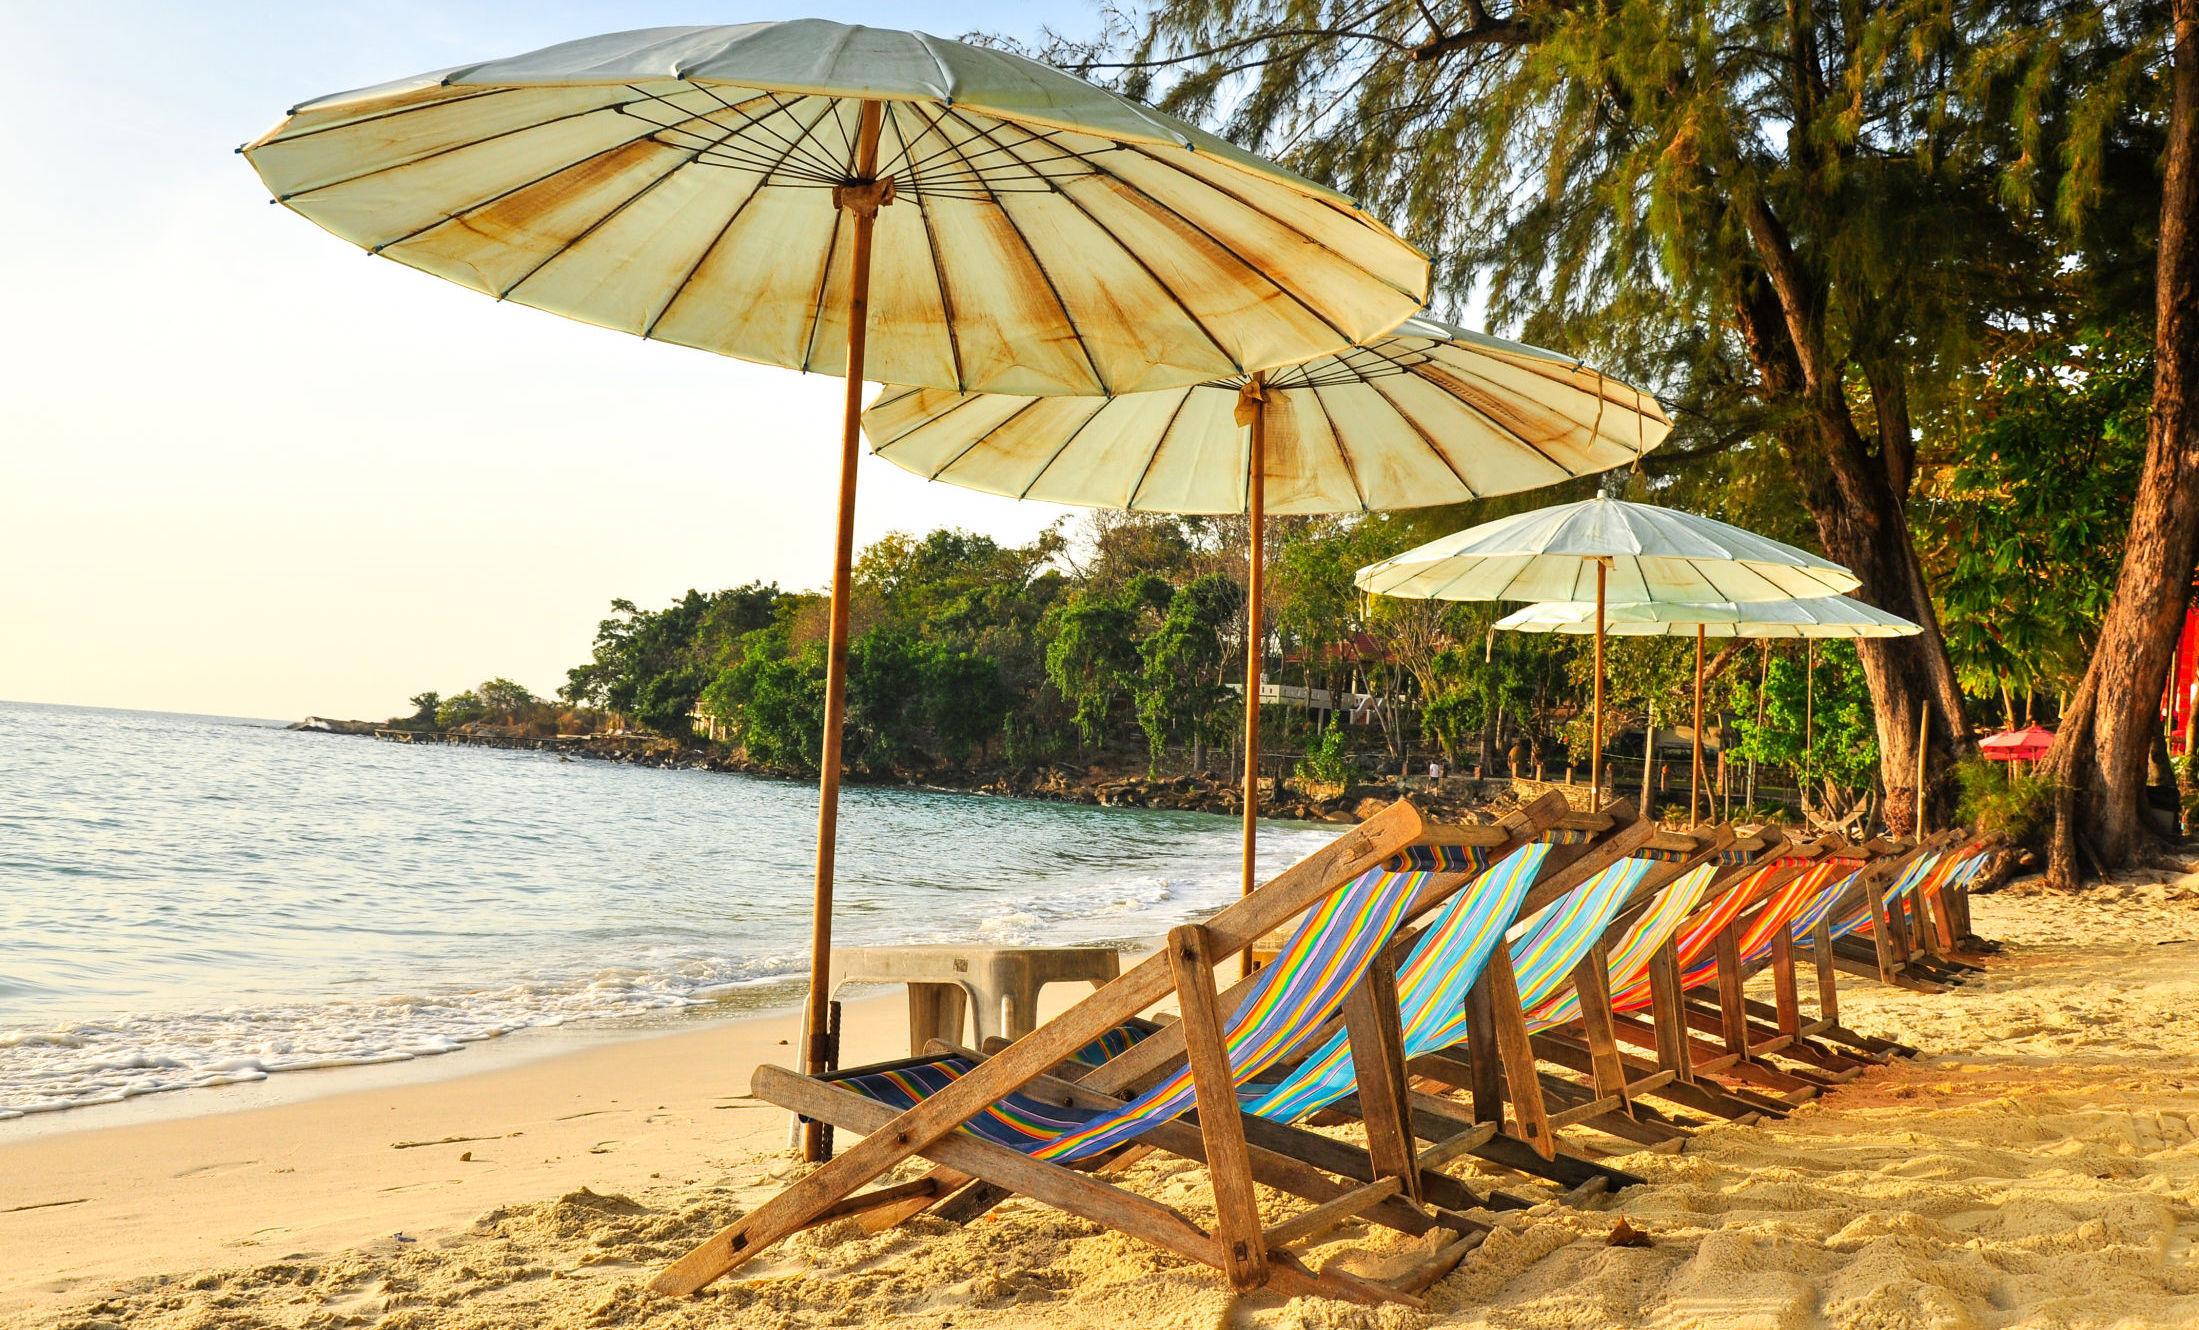 DRØMMEN: Solnedgang i en strandstol på øya Koh Samet er virkelig noe å drømme om i disse dager. Foto: Shutterstock